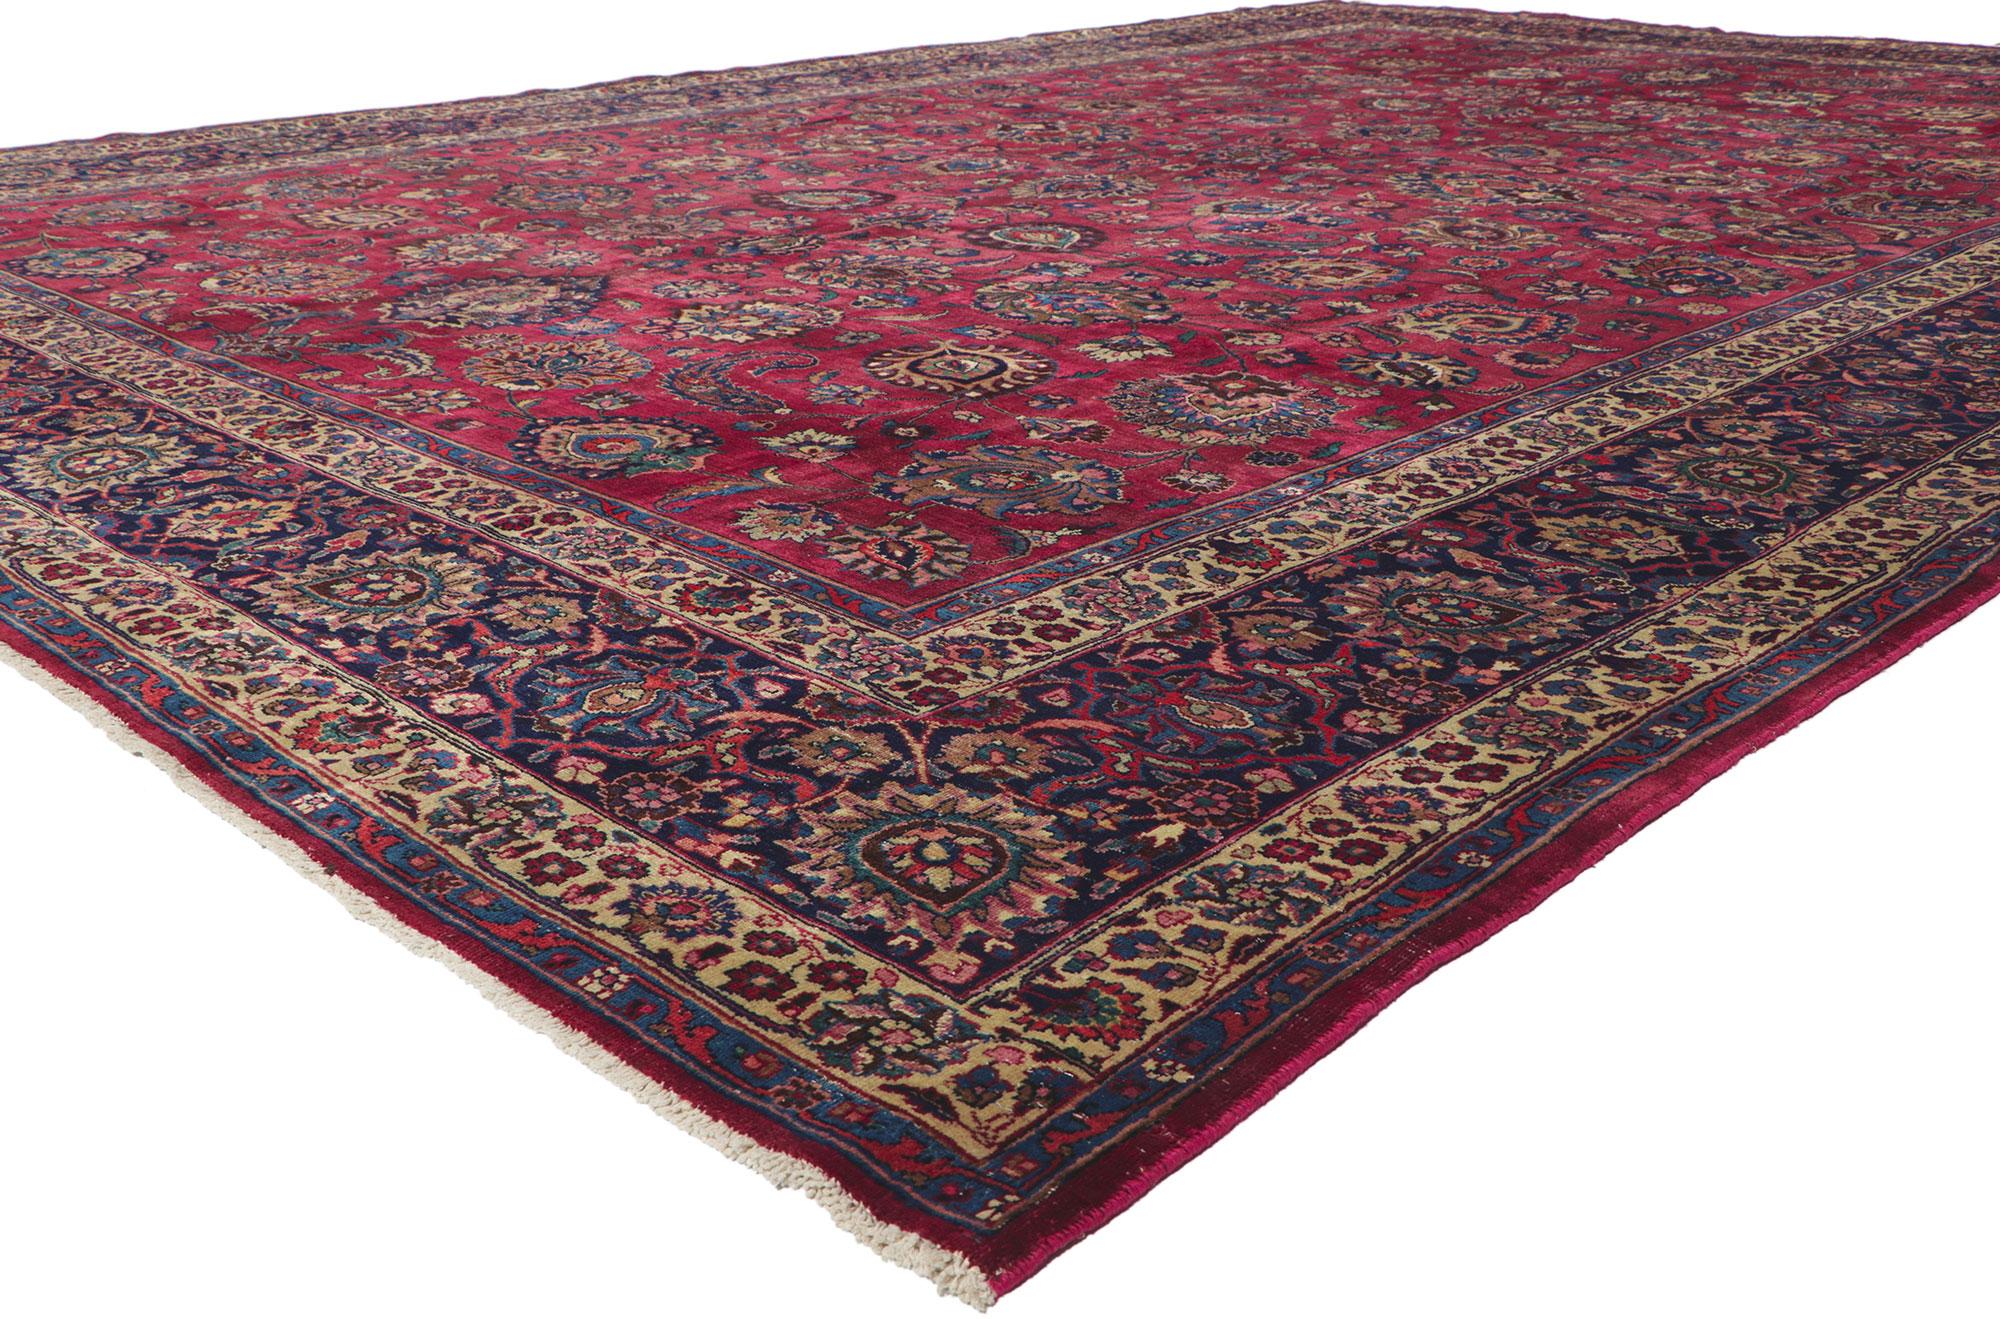 61201 Antiker persischer Mashhad-Teppich 11'07 x 16'09. Dieser handgeknüpfte antike persische Mashhad-Teppich aus Wolle beeindruckt durch seine betörende Schönheit und die reichen Juwelentöne. Das abgewetzte bordeauxfarbene Feld zeigt ein